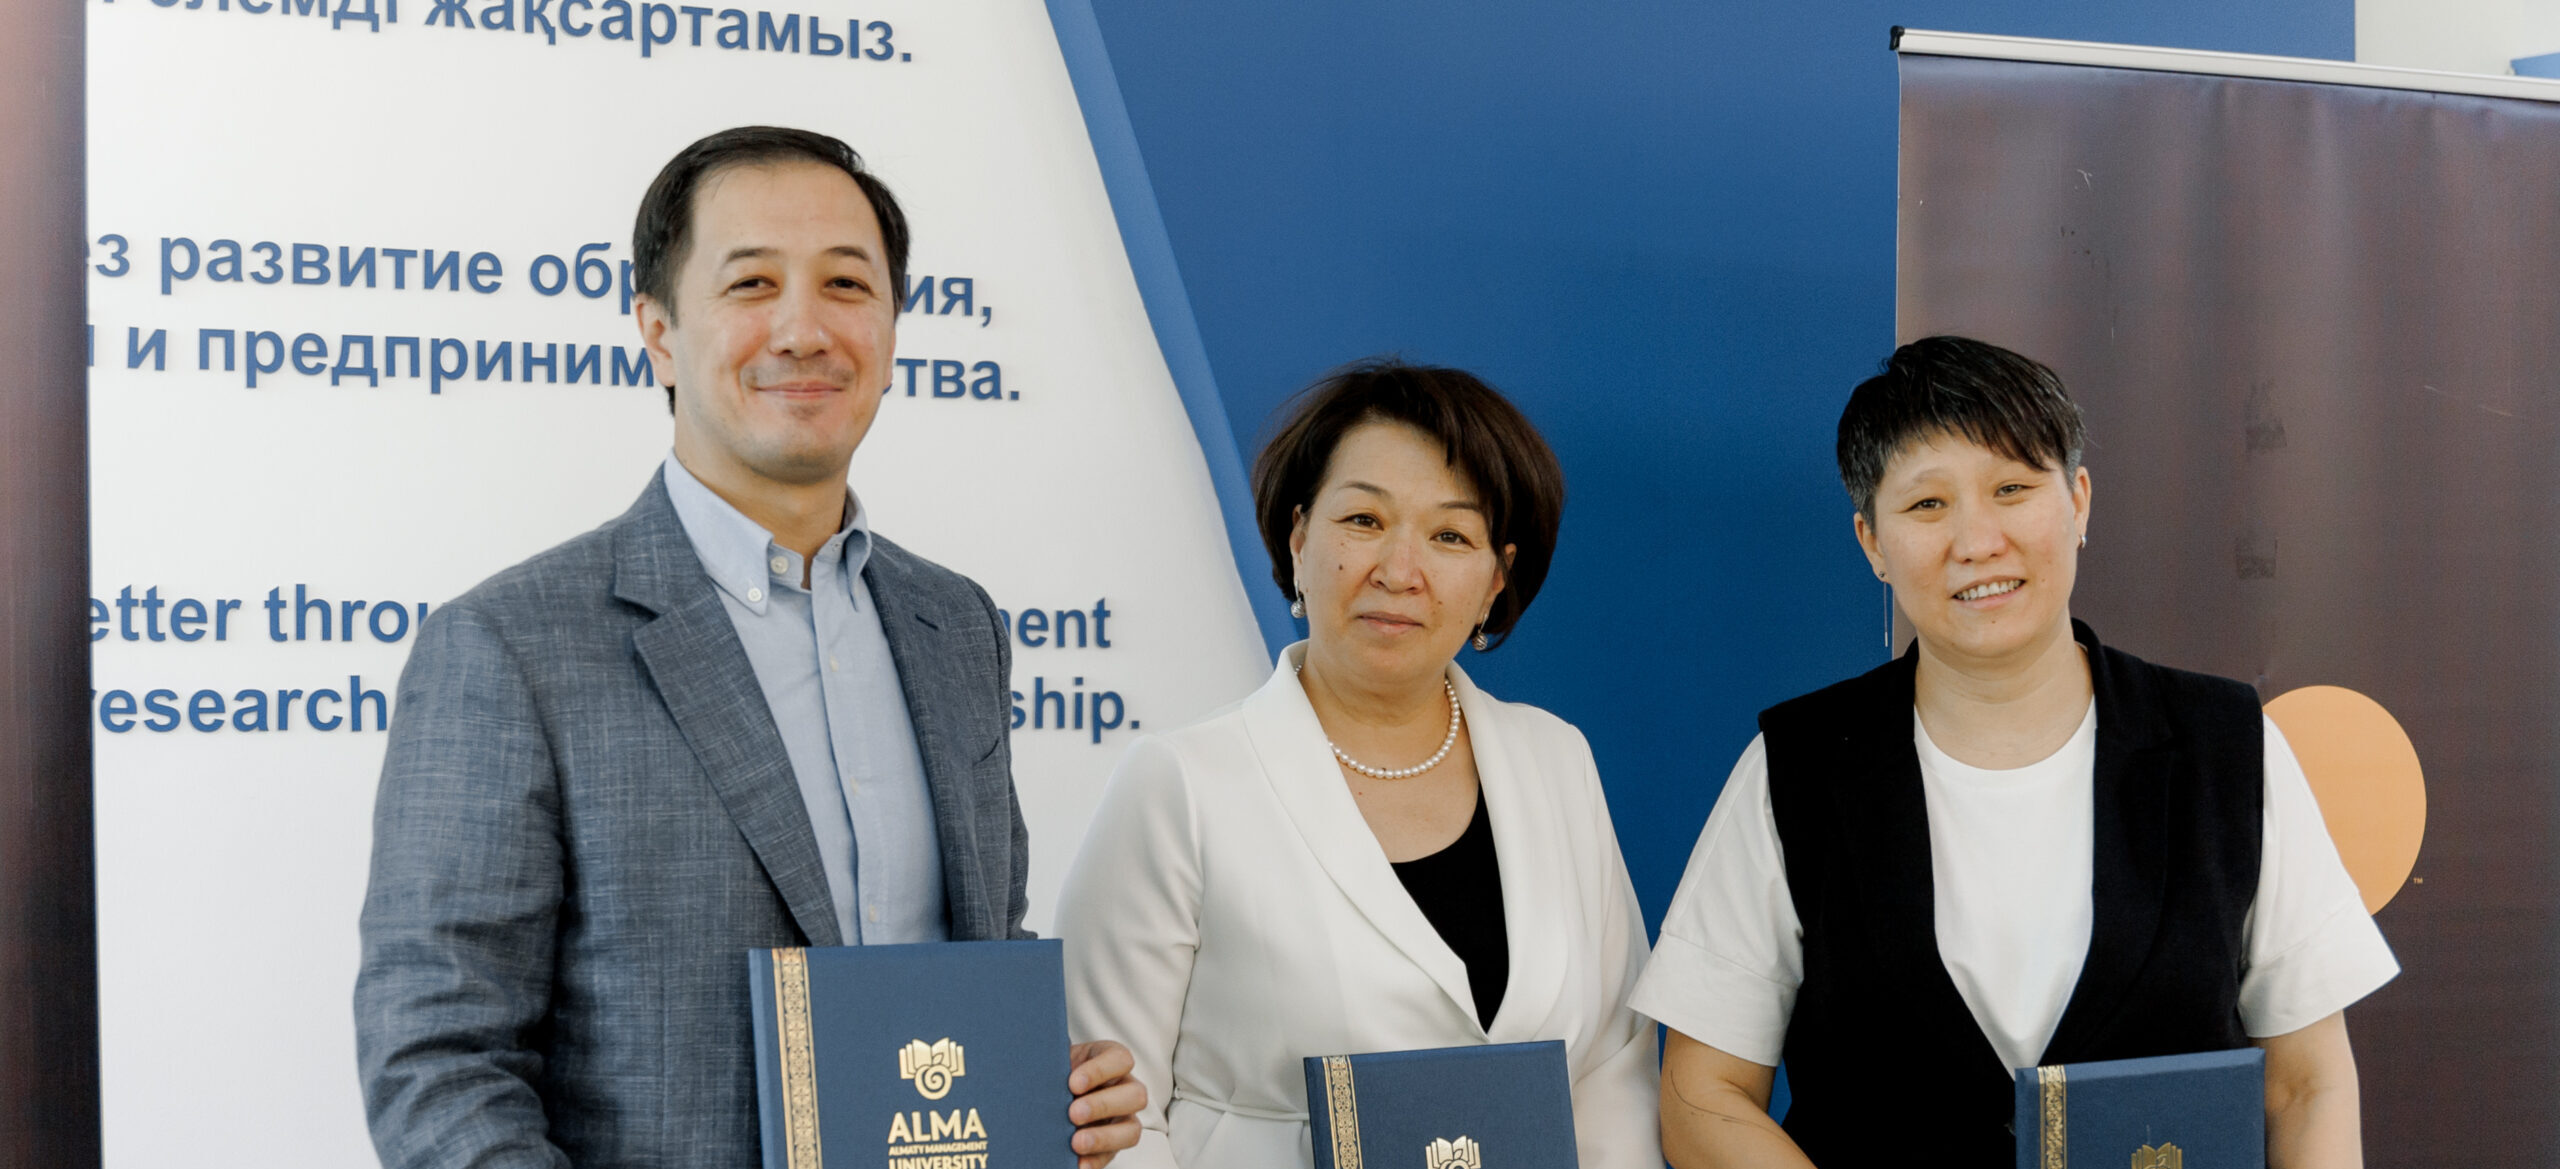  AlmaU объявляет о запуске первой финтех лаборатории Mastercard в Центральной Азии